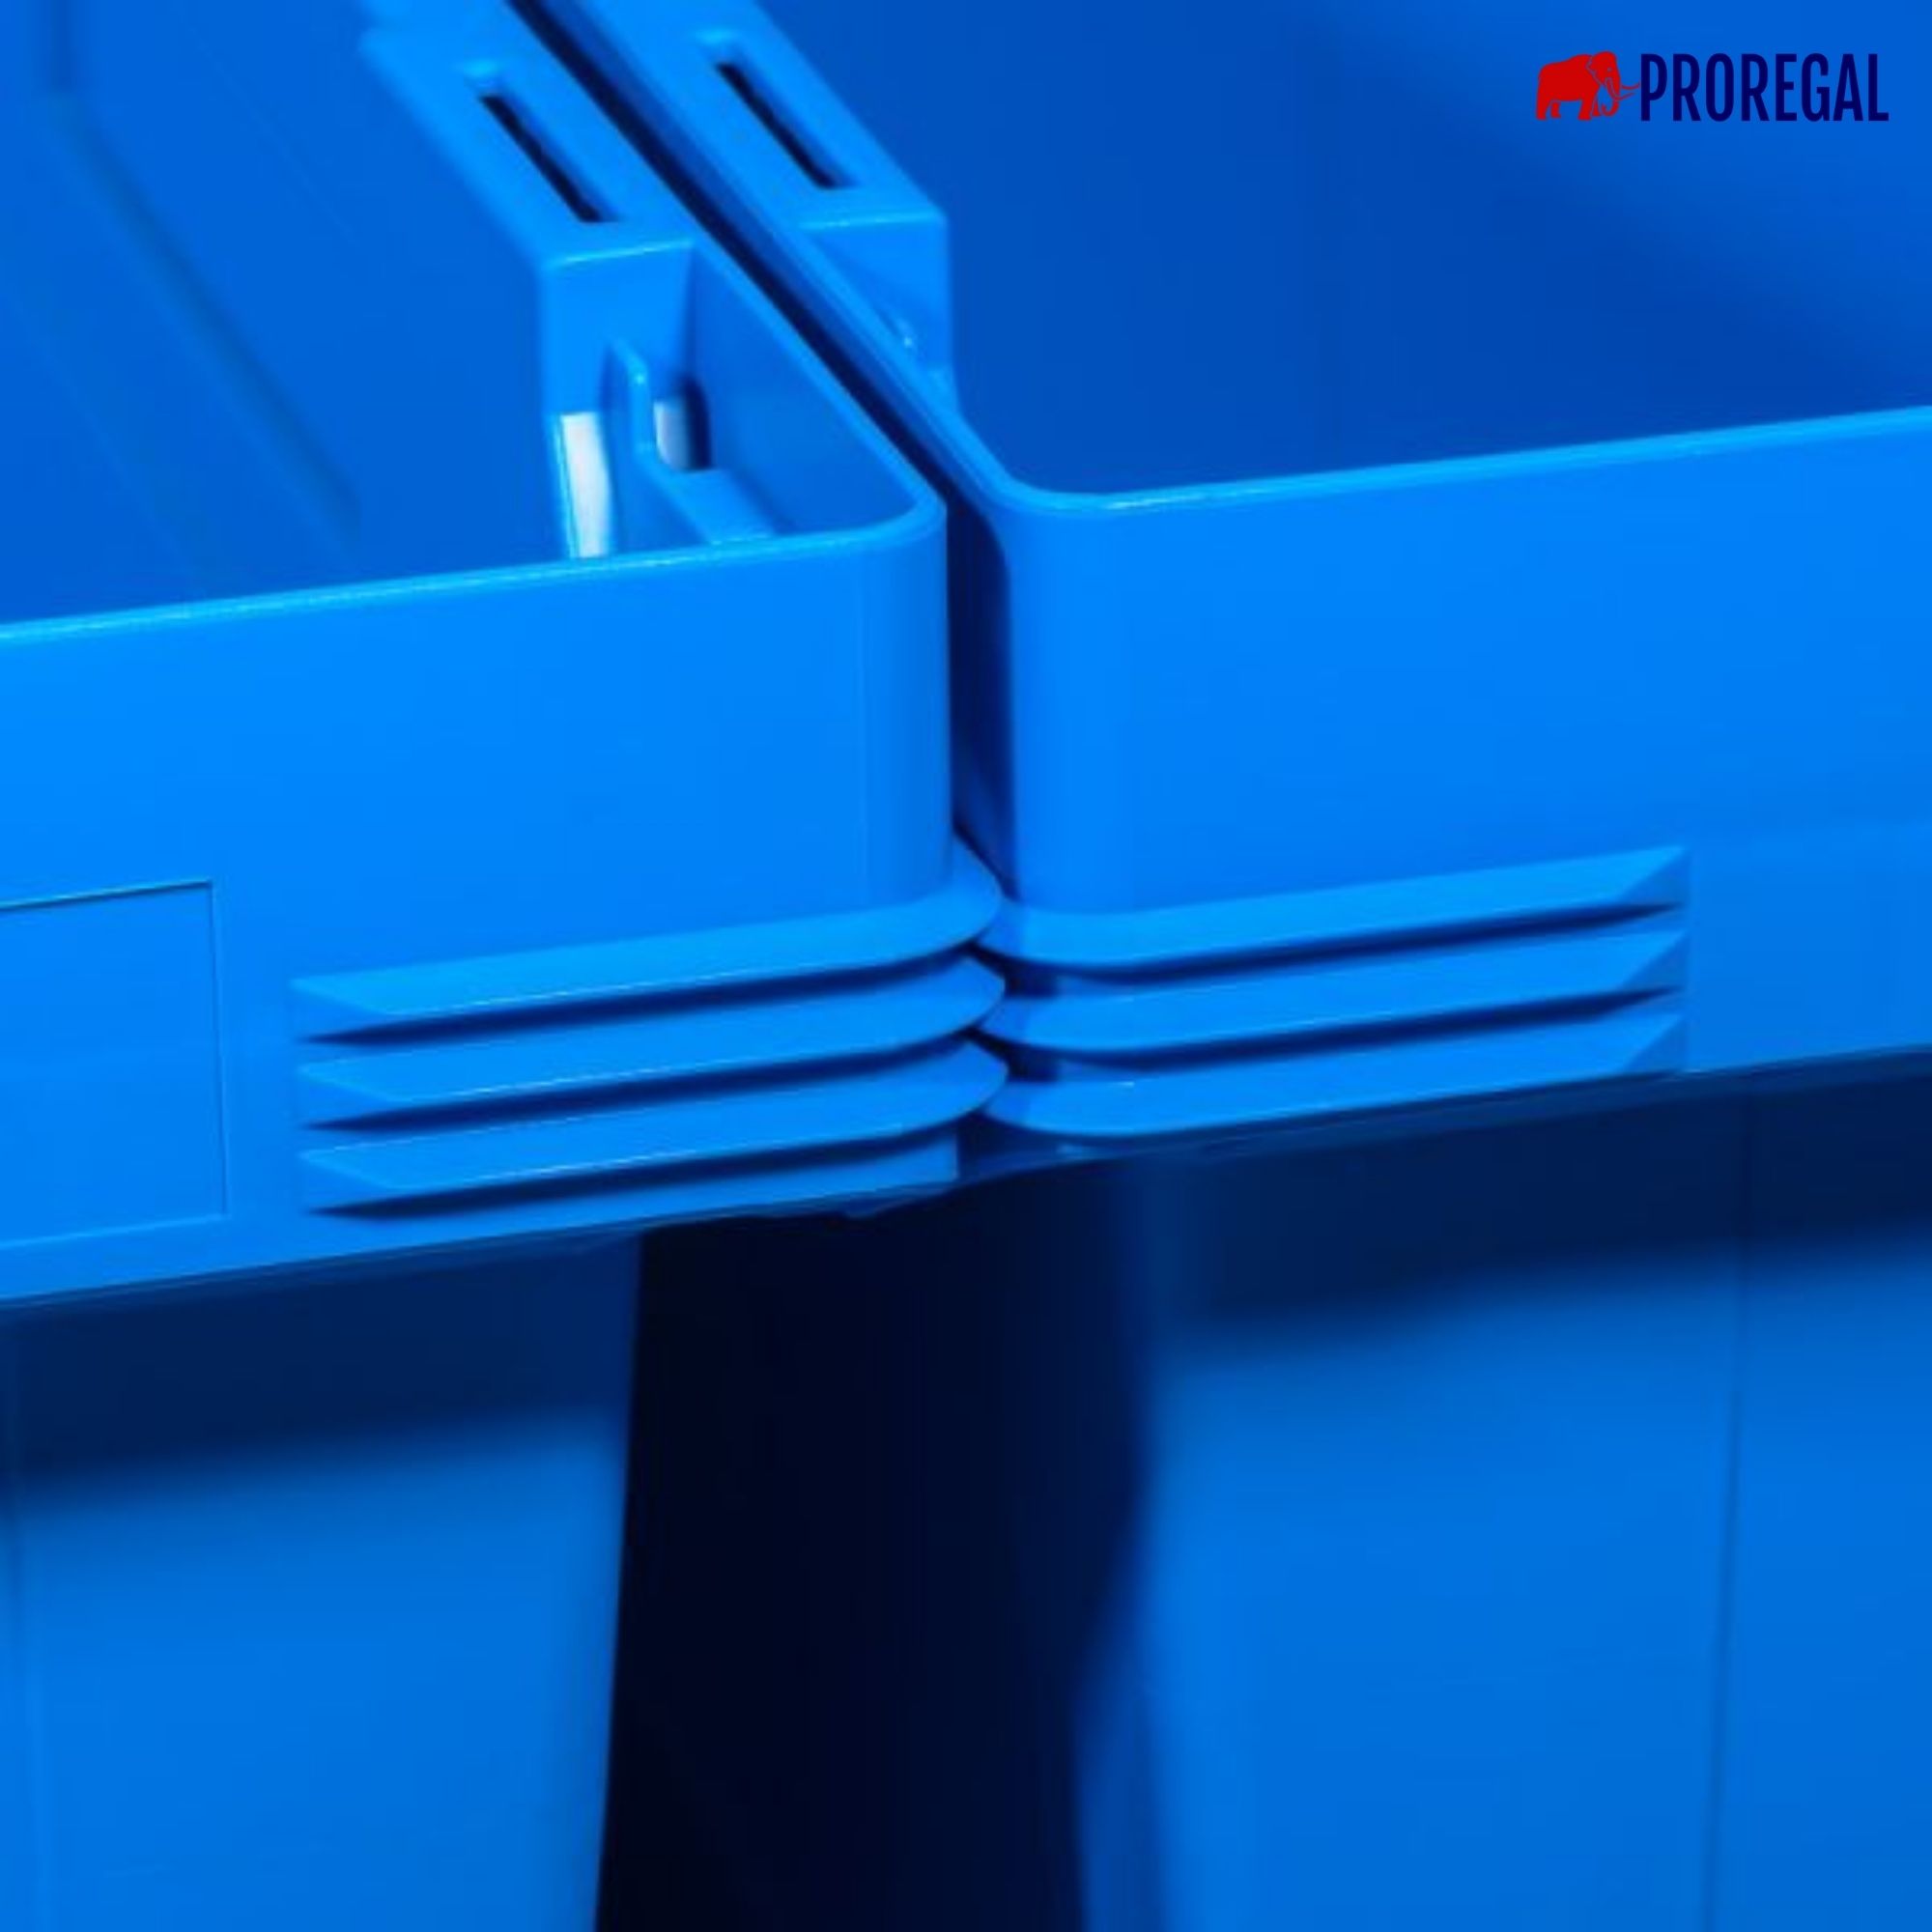 Conical Mehrweg-Stapelbehälter mit Krokodildeckel Blau | HxBxT 19,9x41x61cm | 29 Liter | Lagerbox Eurobox Transportbox Transportbehälter Stapelbehälter